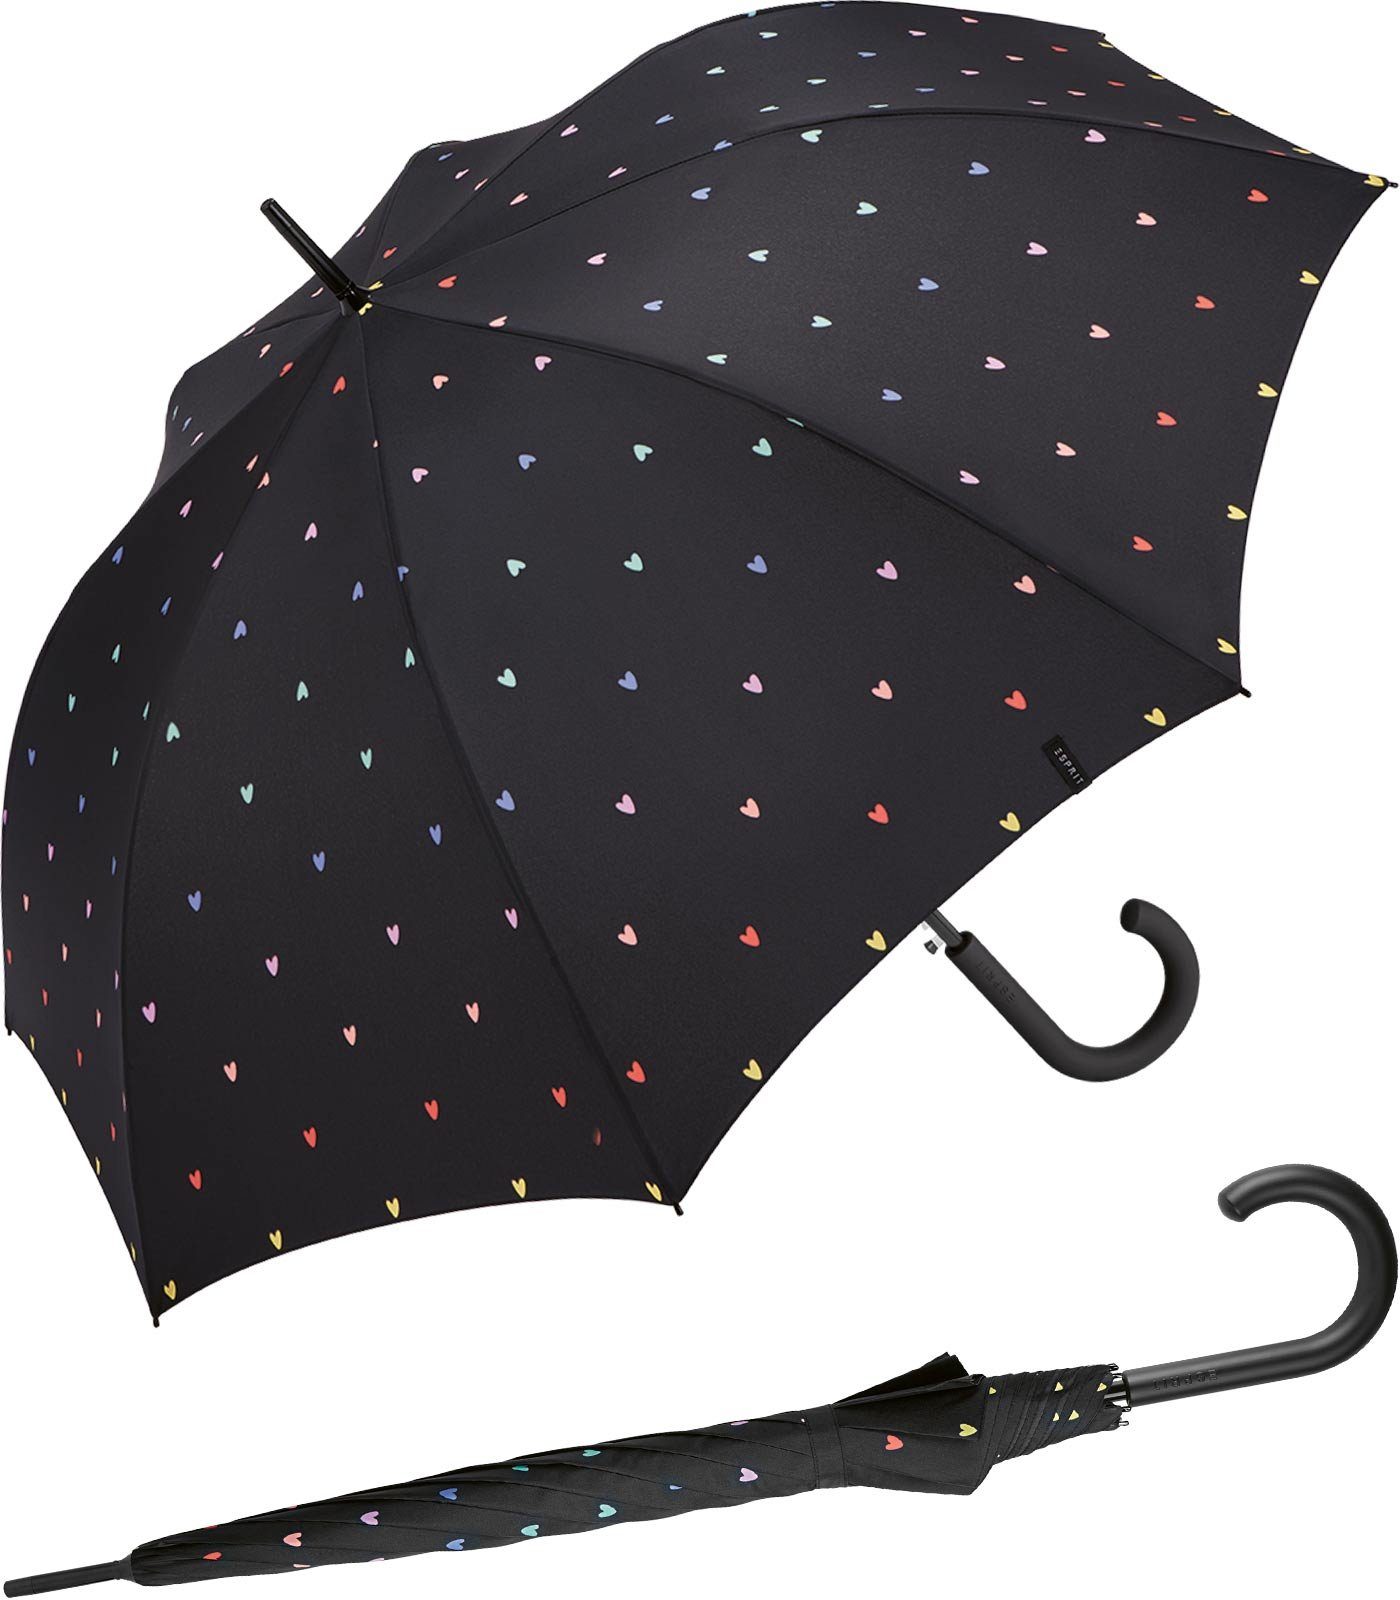 Esprit Langregenschirm Damen Regenschirm mit Automatik Sweatheart, groß und stabil, mit vielen kleinen, bunten Herzen schwarz